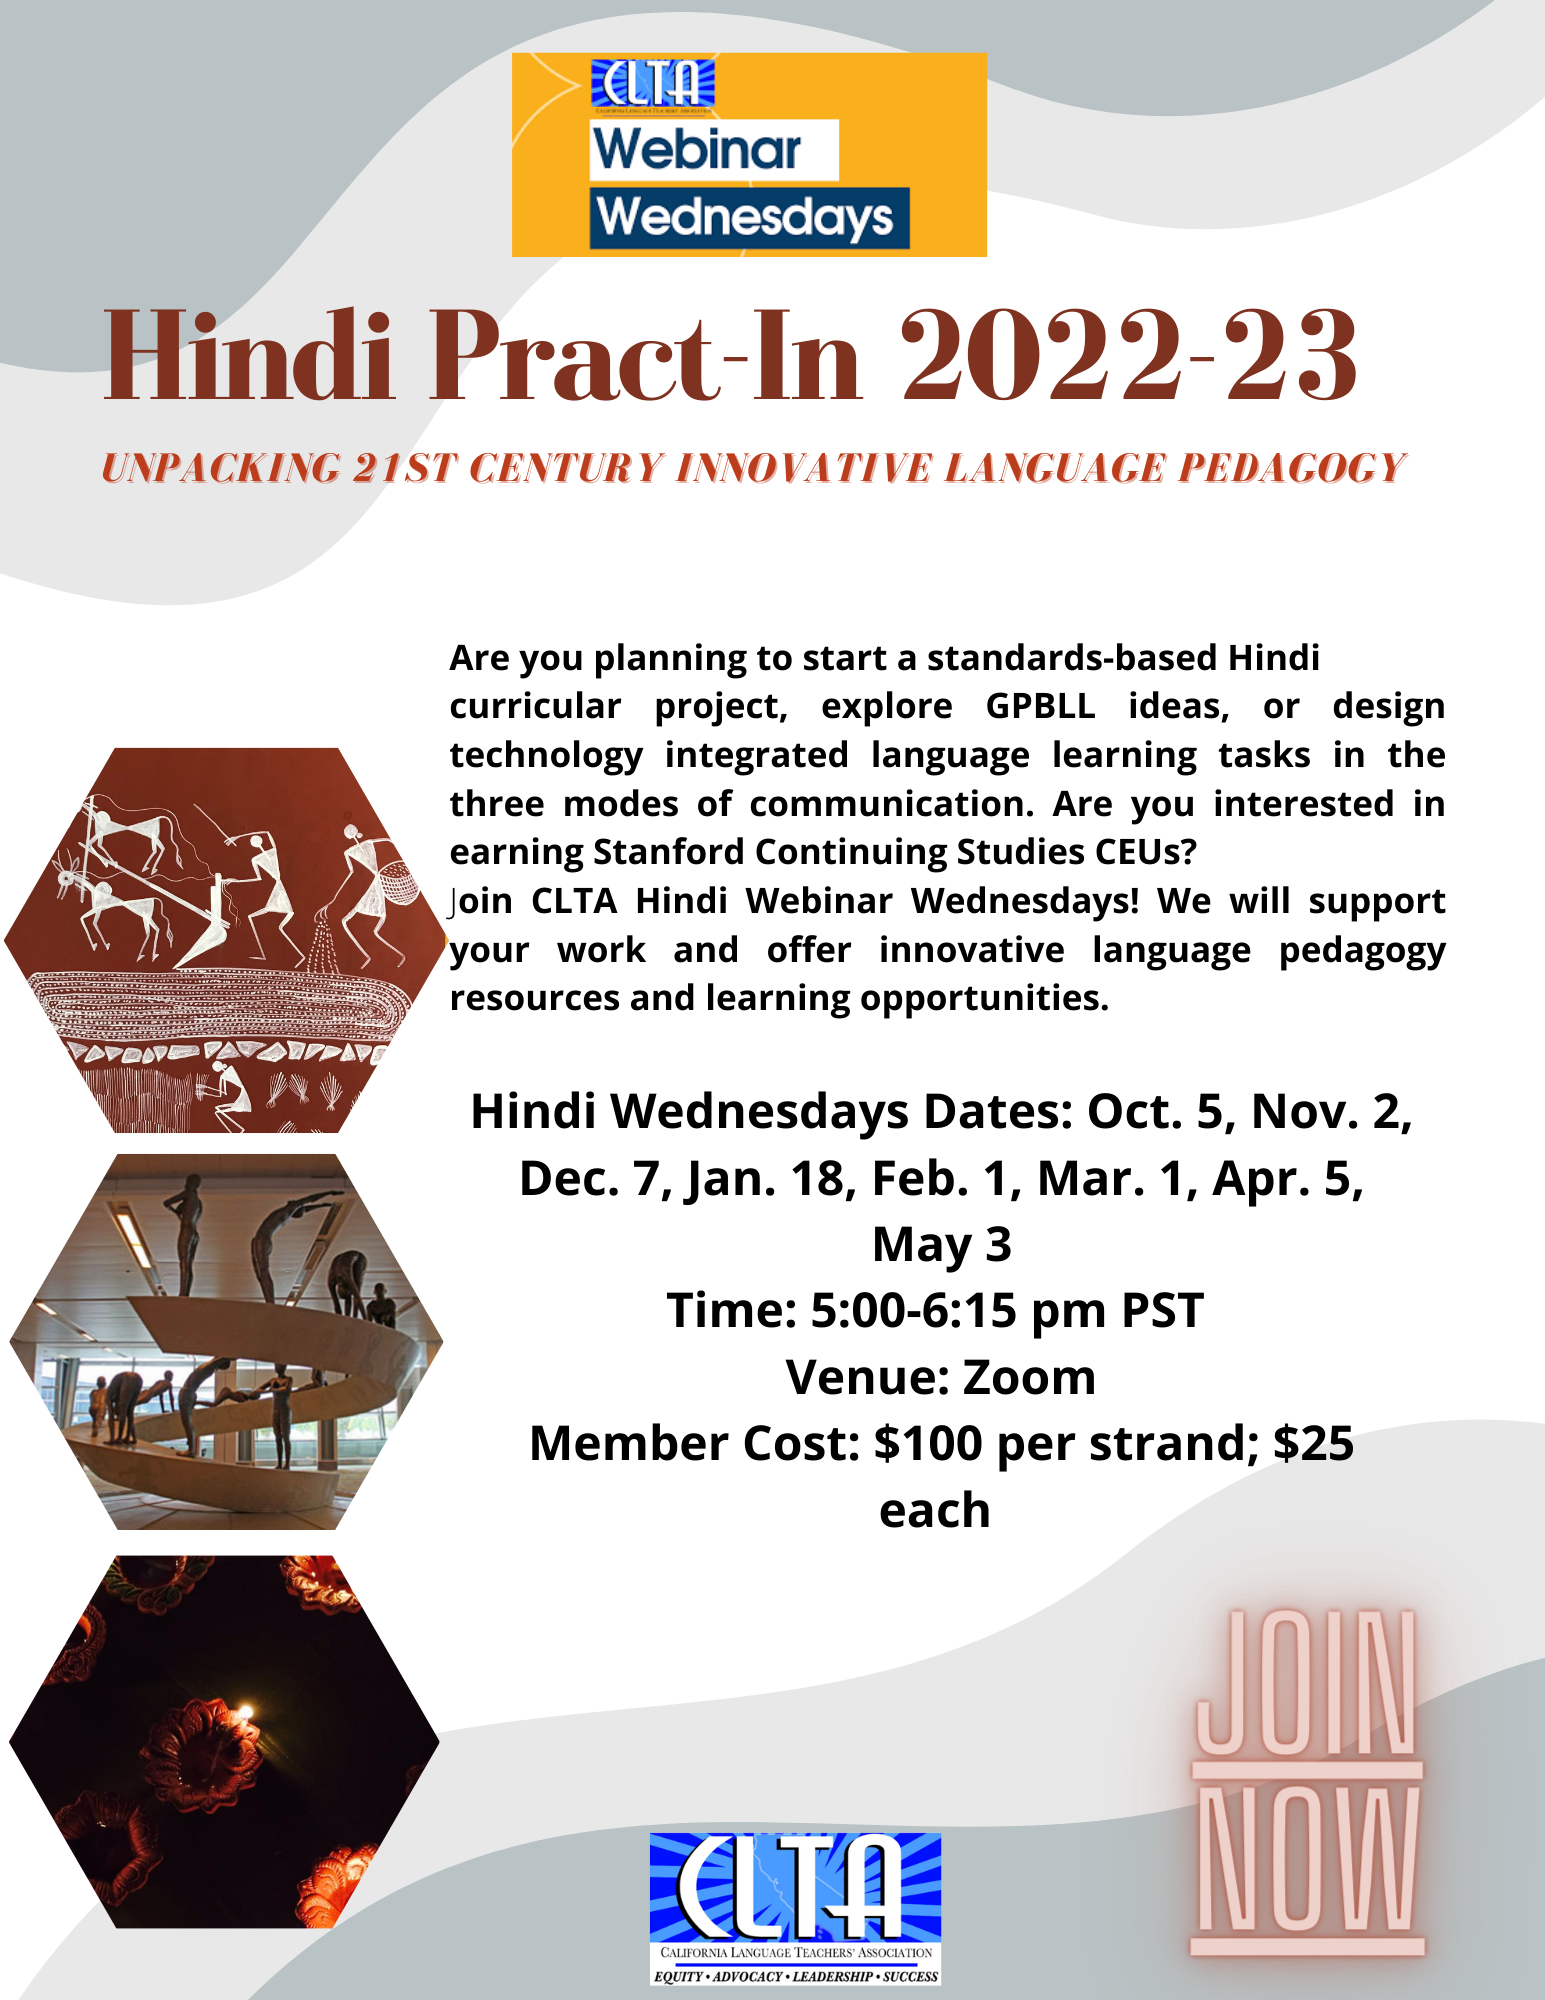 Pract-In’s – Hindi Wednesdays – February 1, 2023